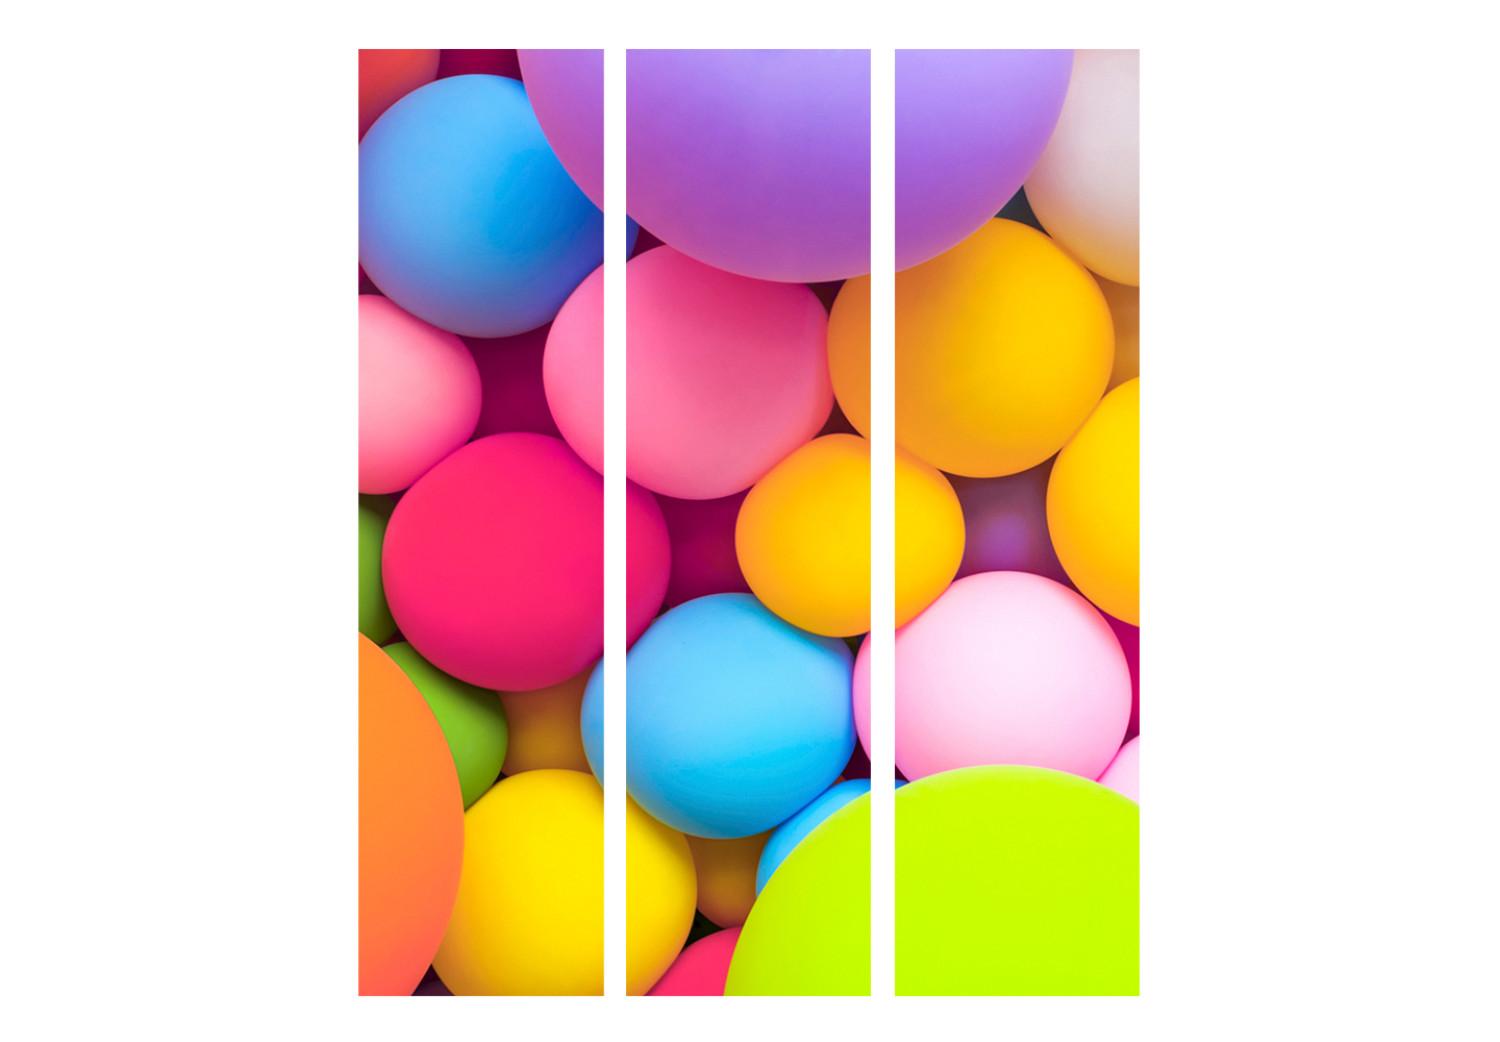 Biombo decorativo Bolas de colores (3 piezas) - formas geométricas multicolores en 3D